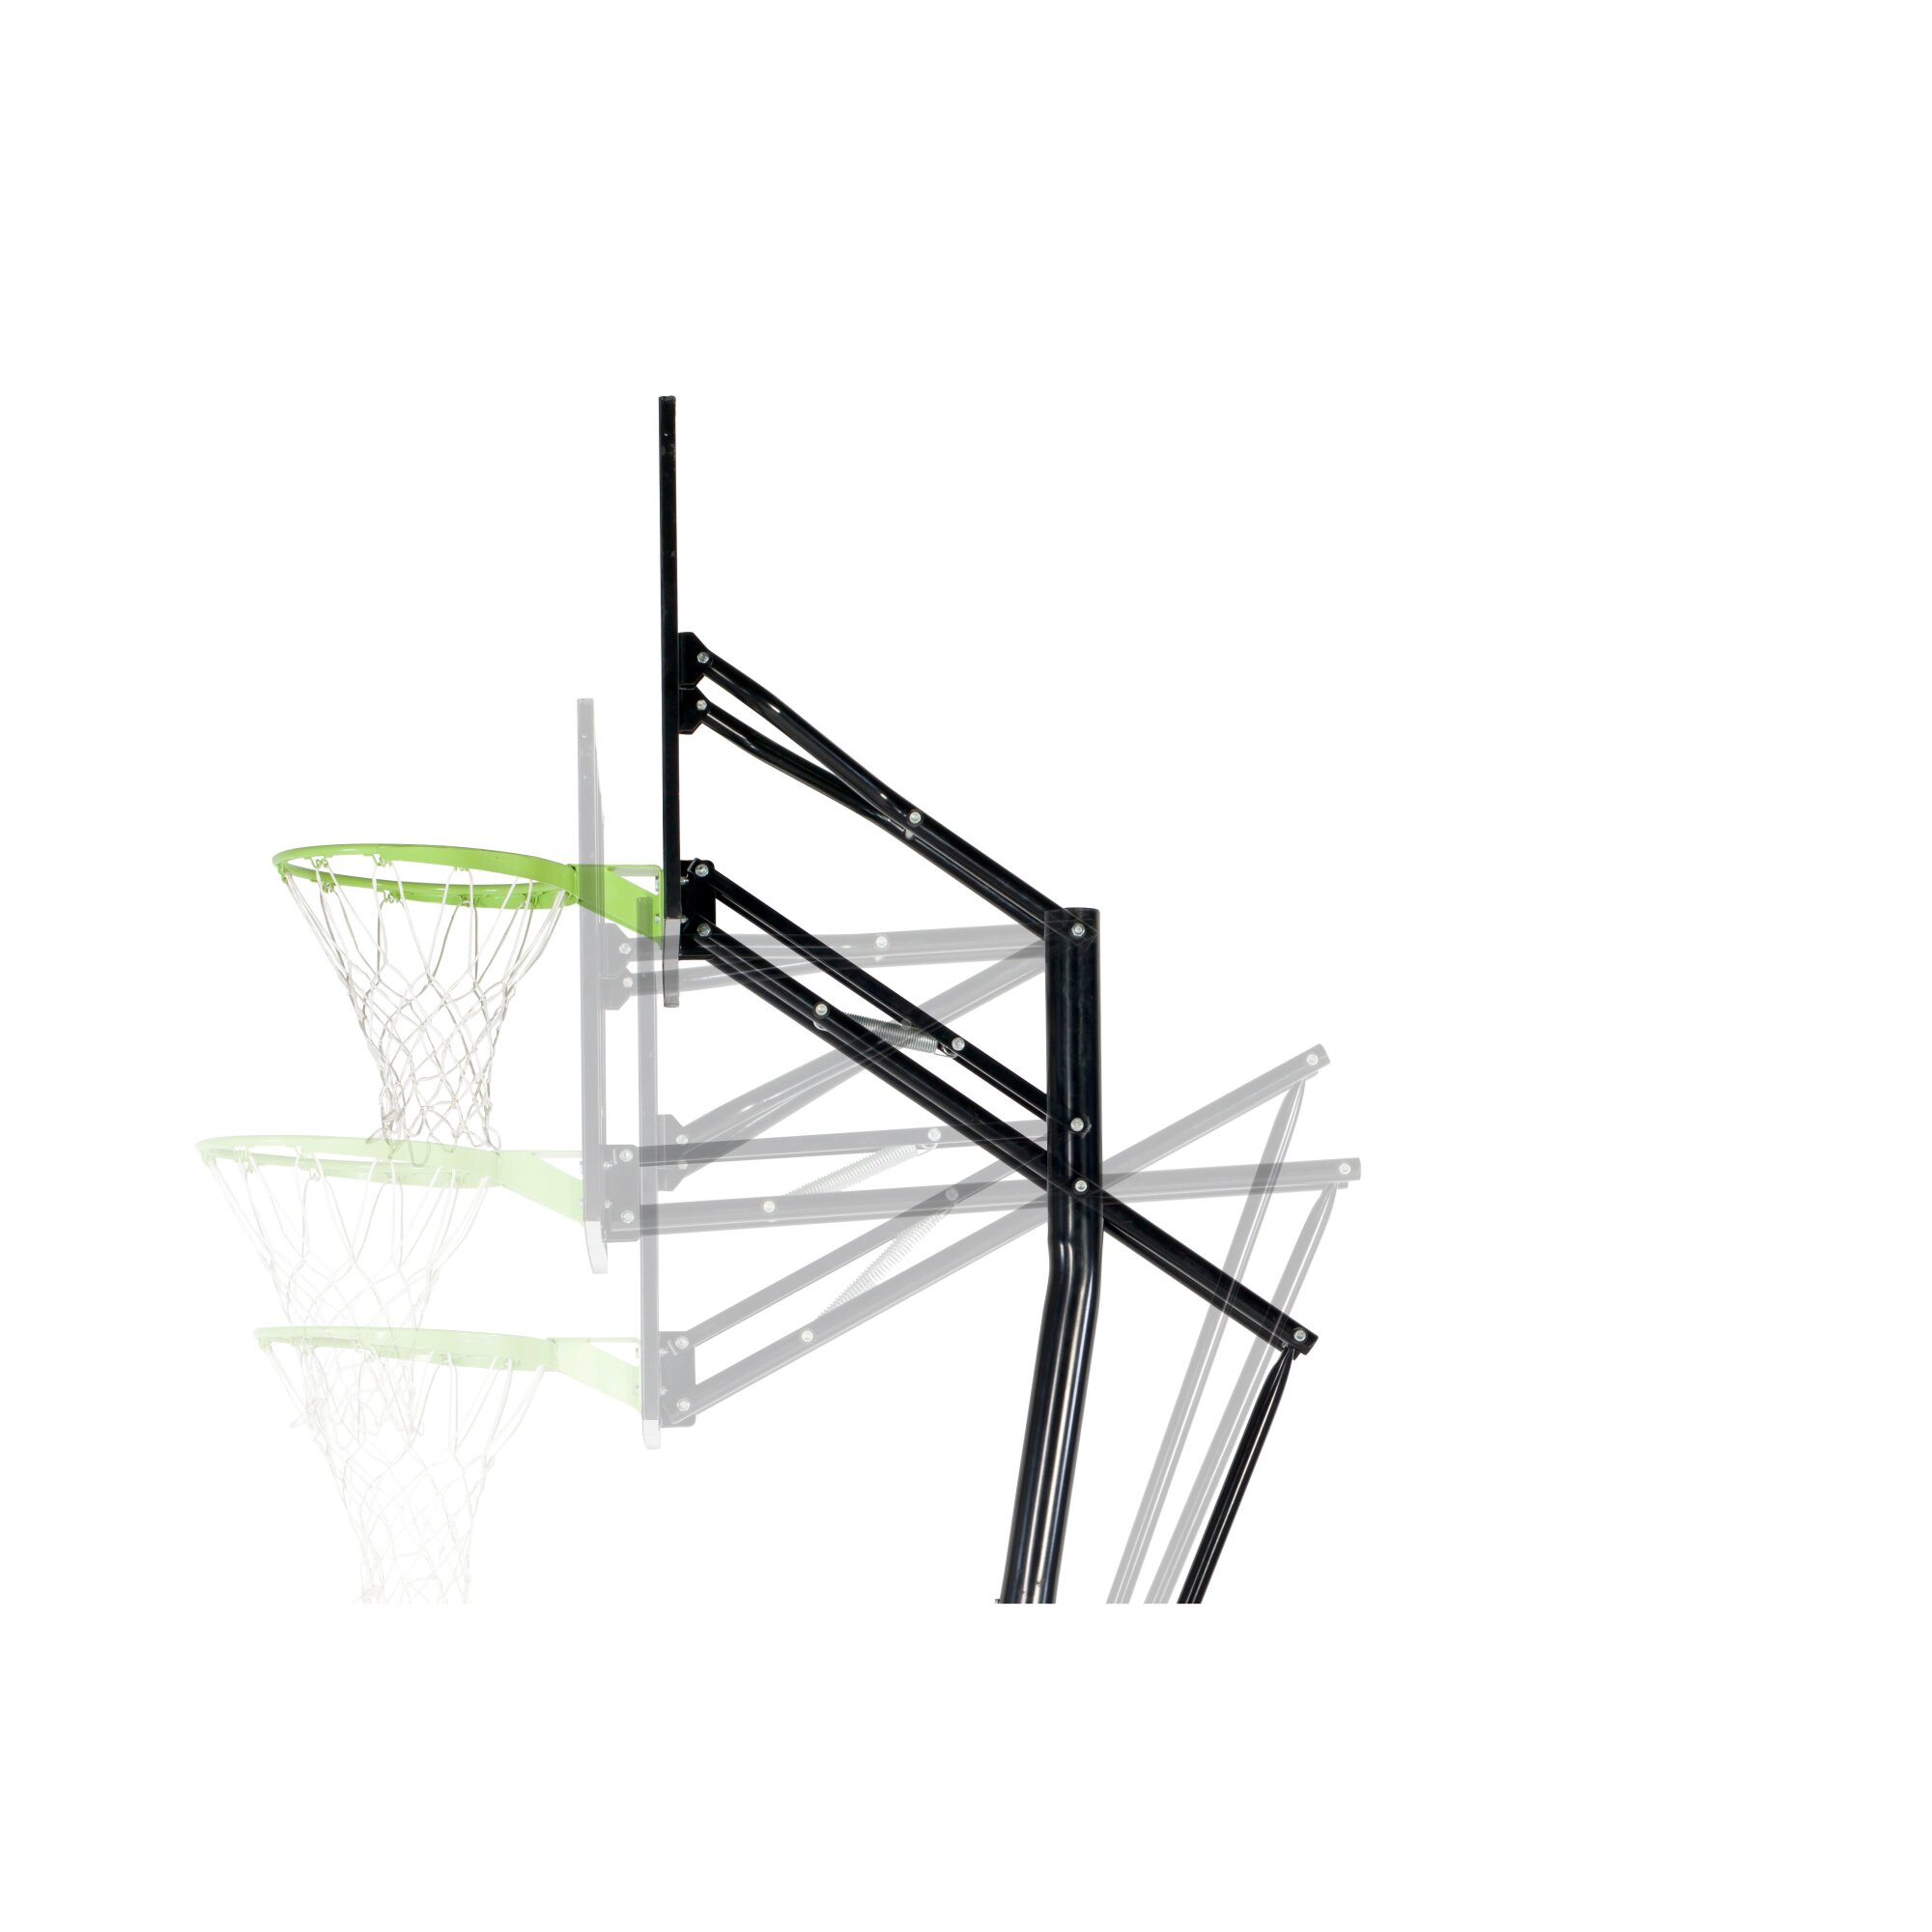 Exit Galaxy Basketballkorb grün-schwarz Bodenmontage Dunkring